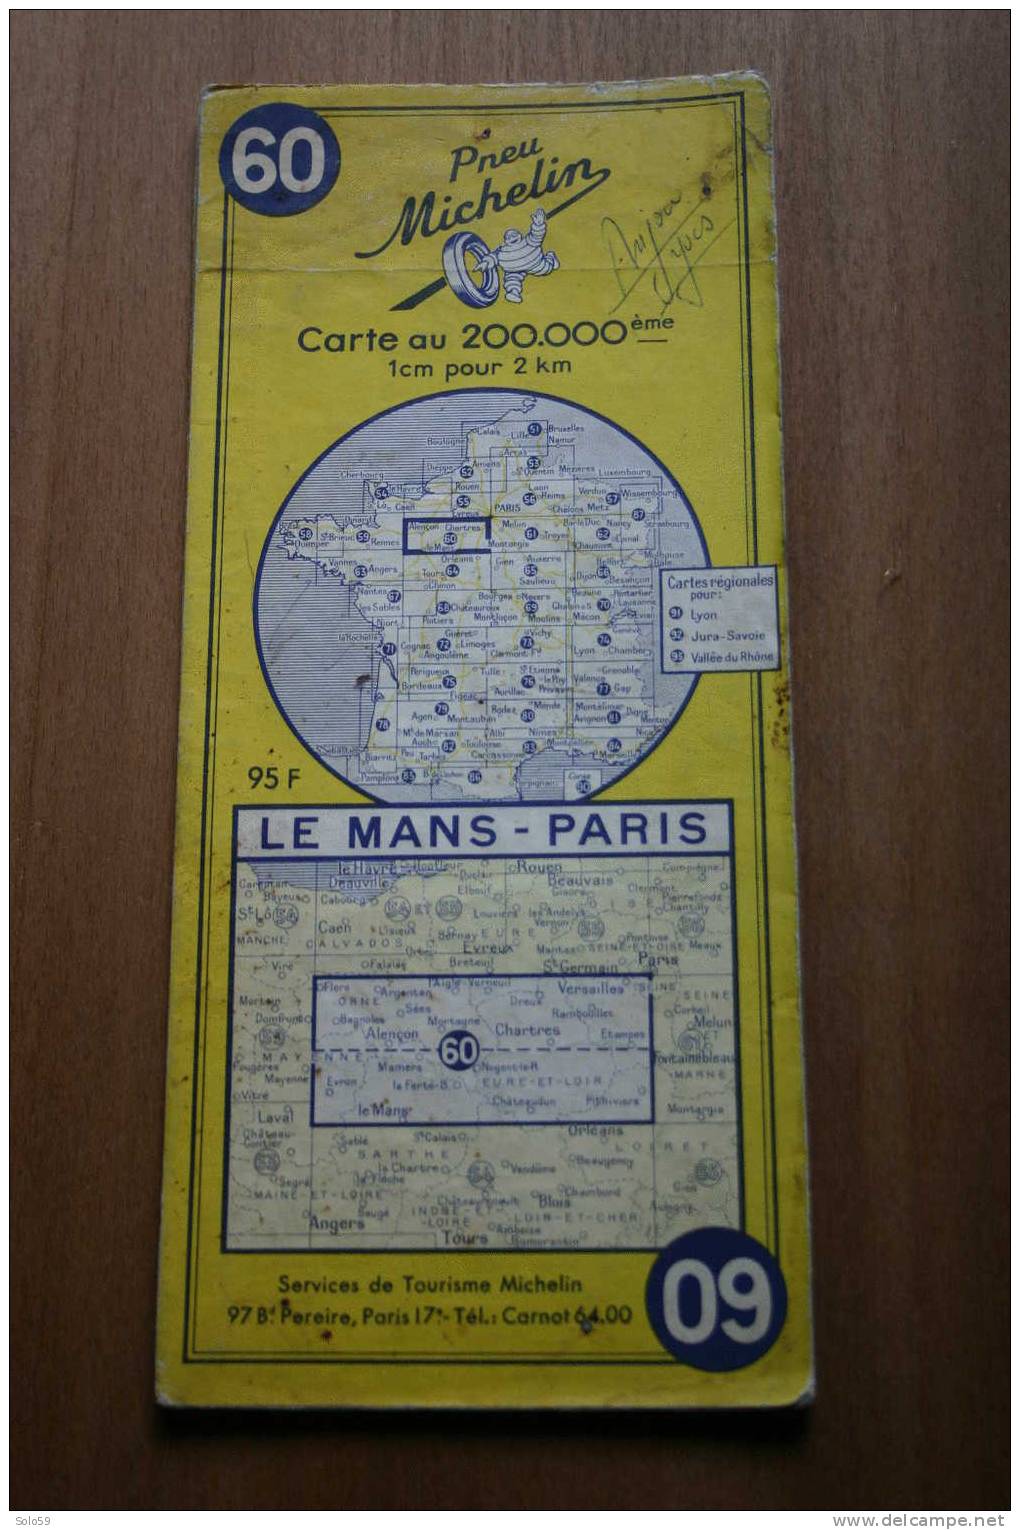 CARTE MICHELIN N°60 LE MANS  - PARIS 1956 - Cartes/Atlas